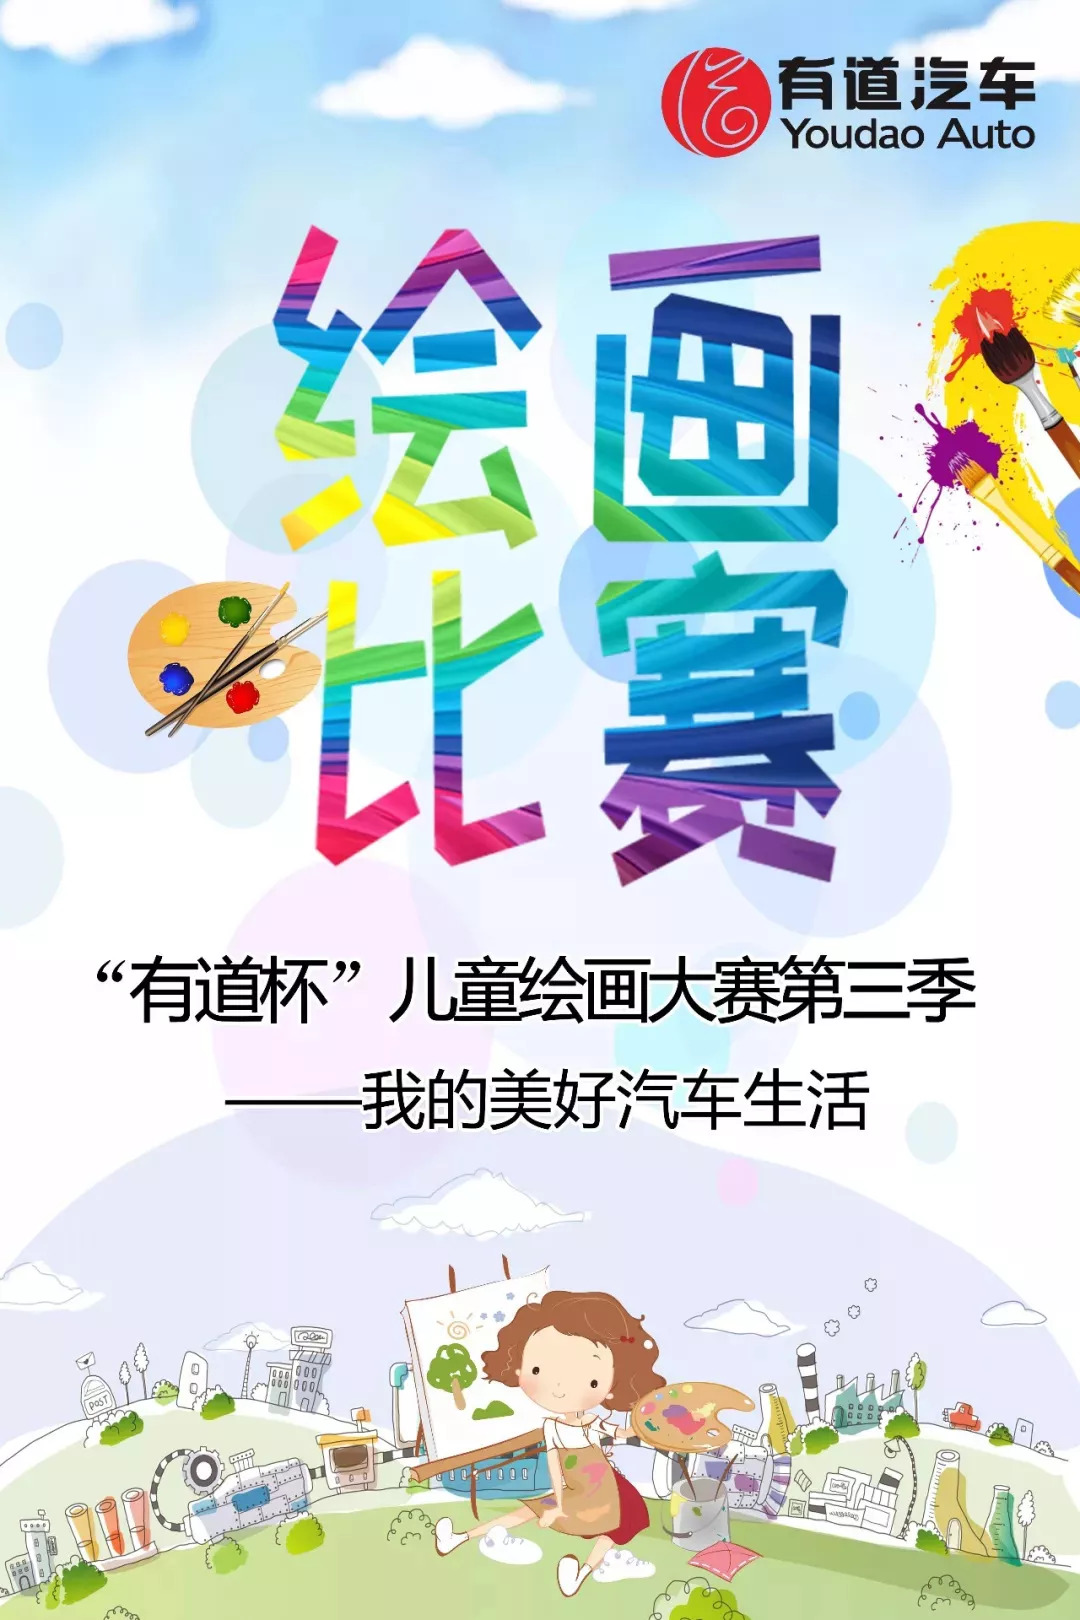 【广州众道站】我的美好汽车生活丨"有道杯"儿童绘画大赛第三季开始!